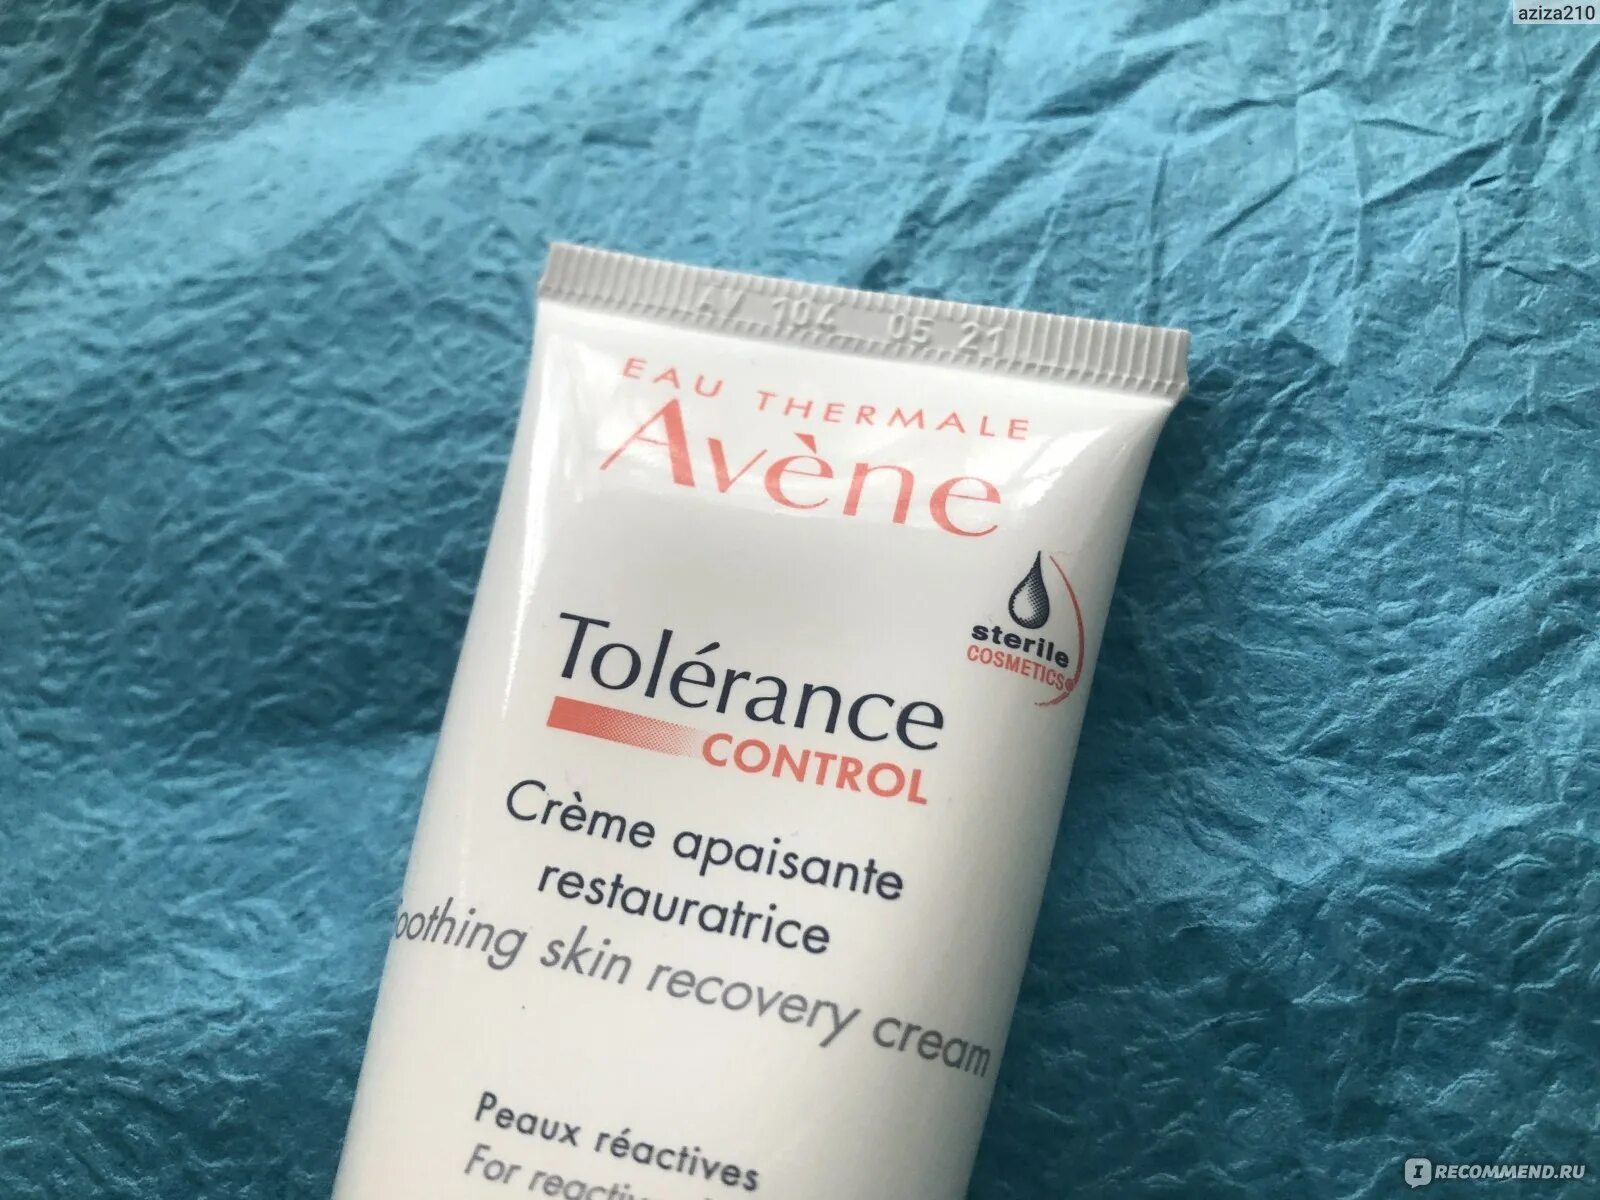 Авен (Avene) tolerance Control крем успокаивающий восстанавливающий 40 мл. Авен крем для глаз для очень чувствительной кожи. Акнестоп крем купить. Avene tolerance control